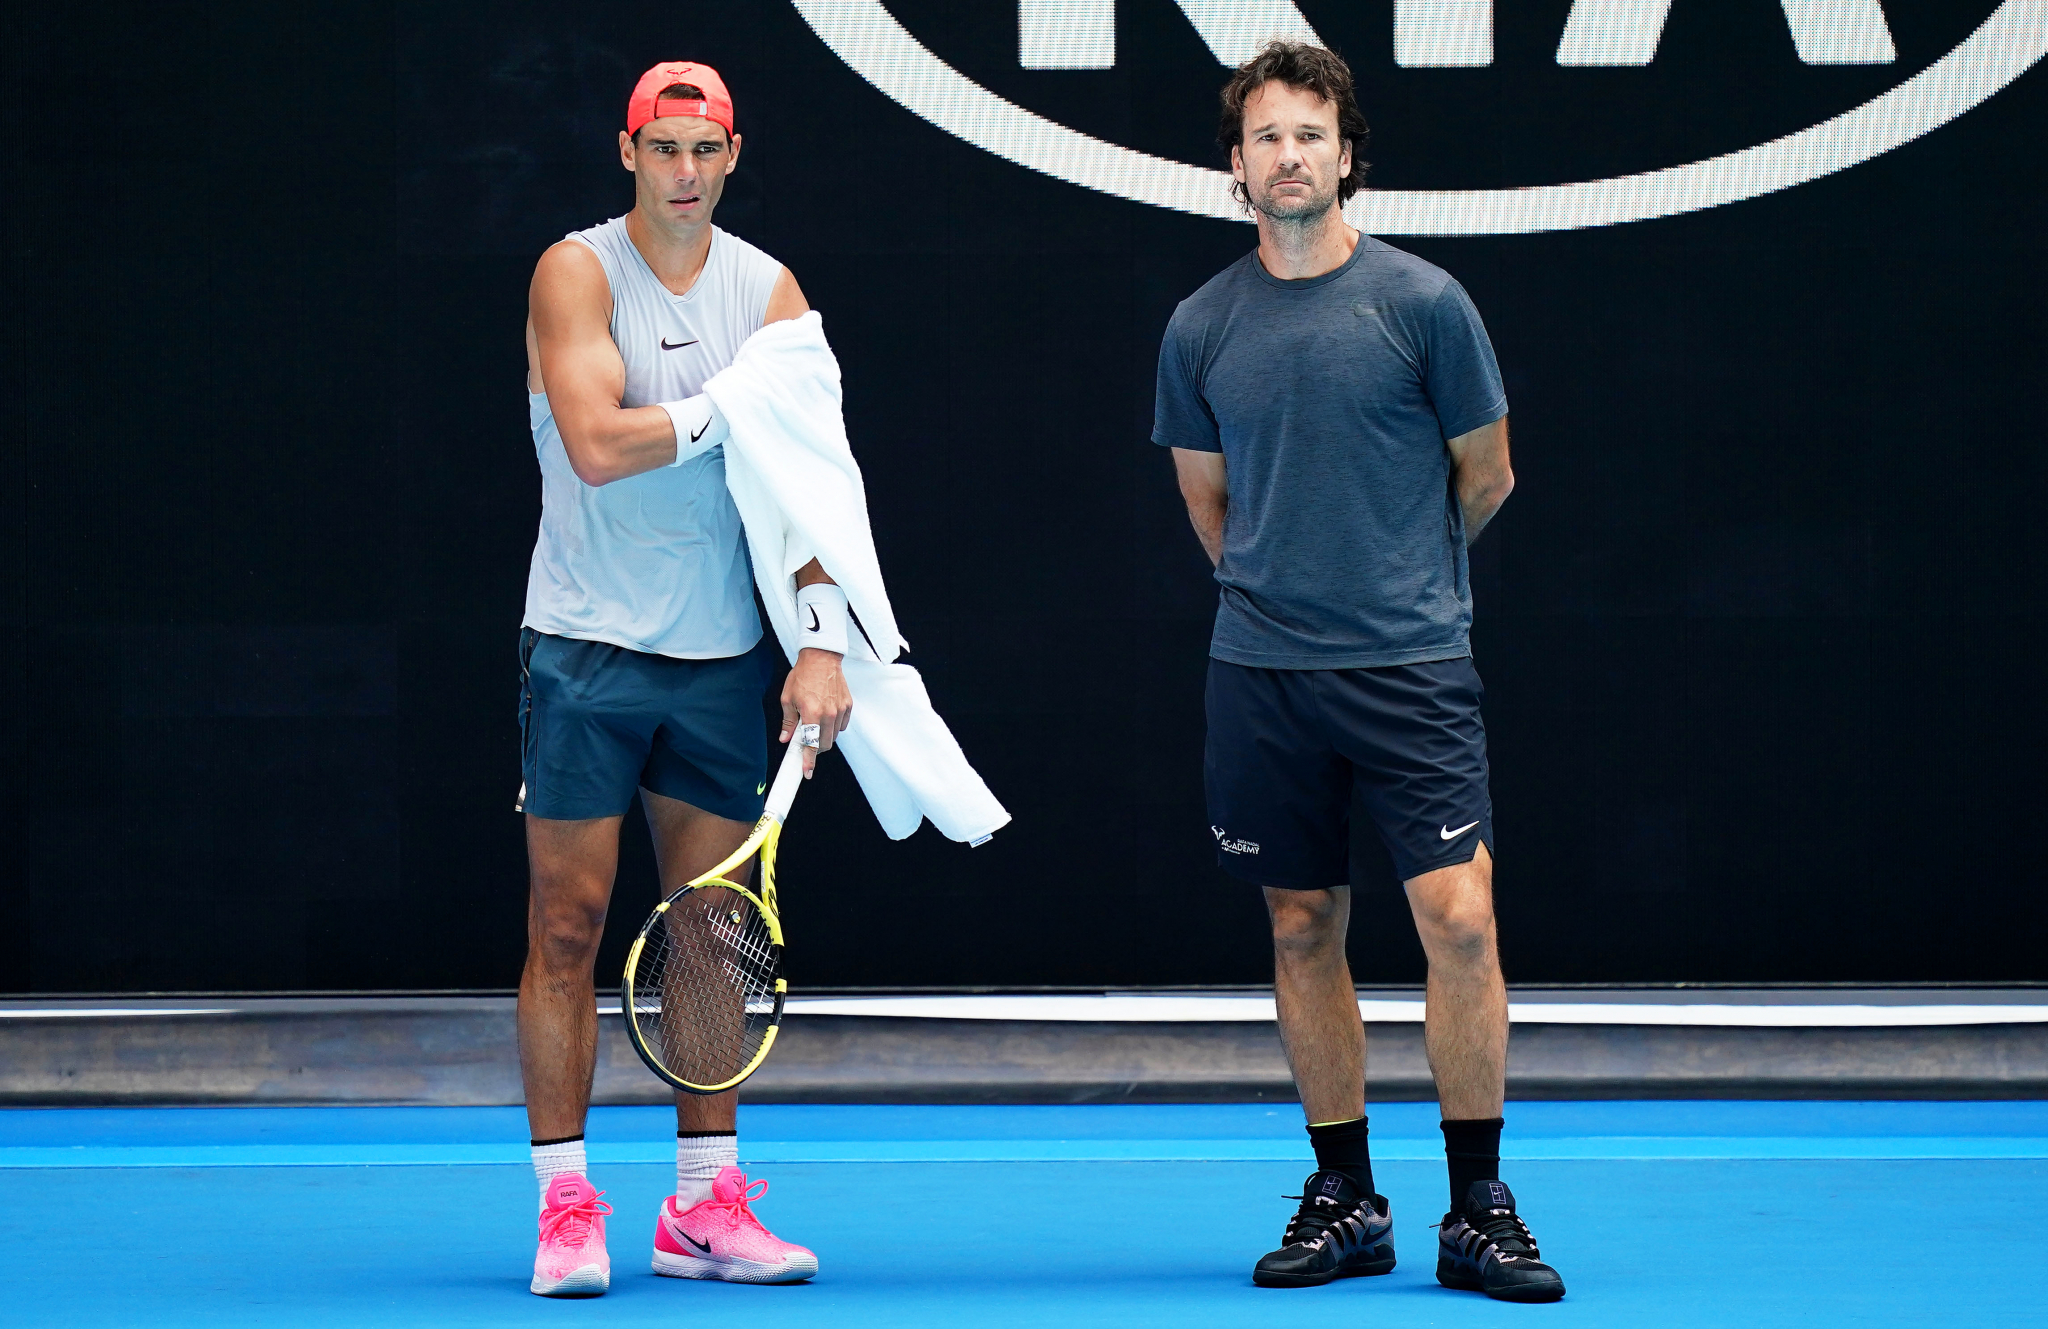 NEOBIČNA IZJAVA ČUVENOG TENISERA Rafael Nadal bi se penzionisao, ali...